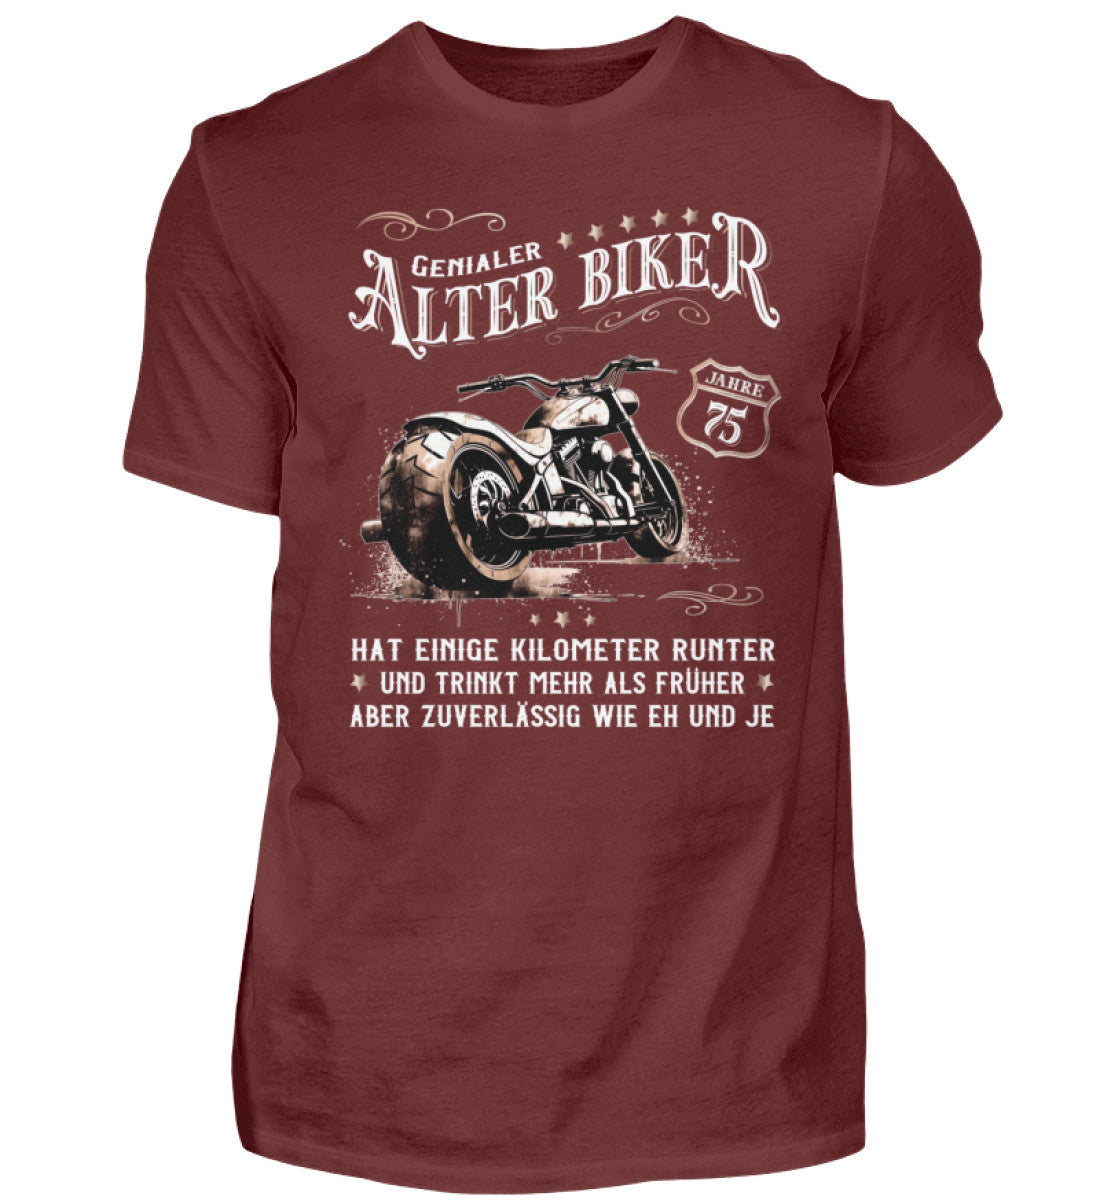 Ein Biker T-Shirt zum Geburtstag für Motorradfahrer von Wingbikers mit dem Aufdruck, Alter Biker - 75 Jahre - Einige Kilometer runter, trinkt mehr - aber zuverlässig wie eh und je - in weinrot.